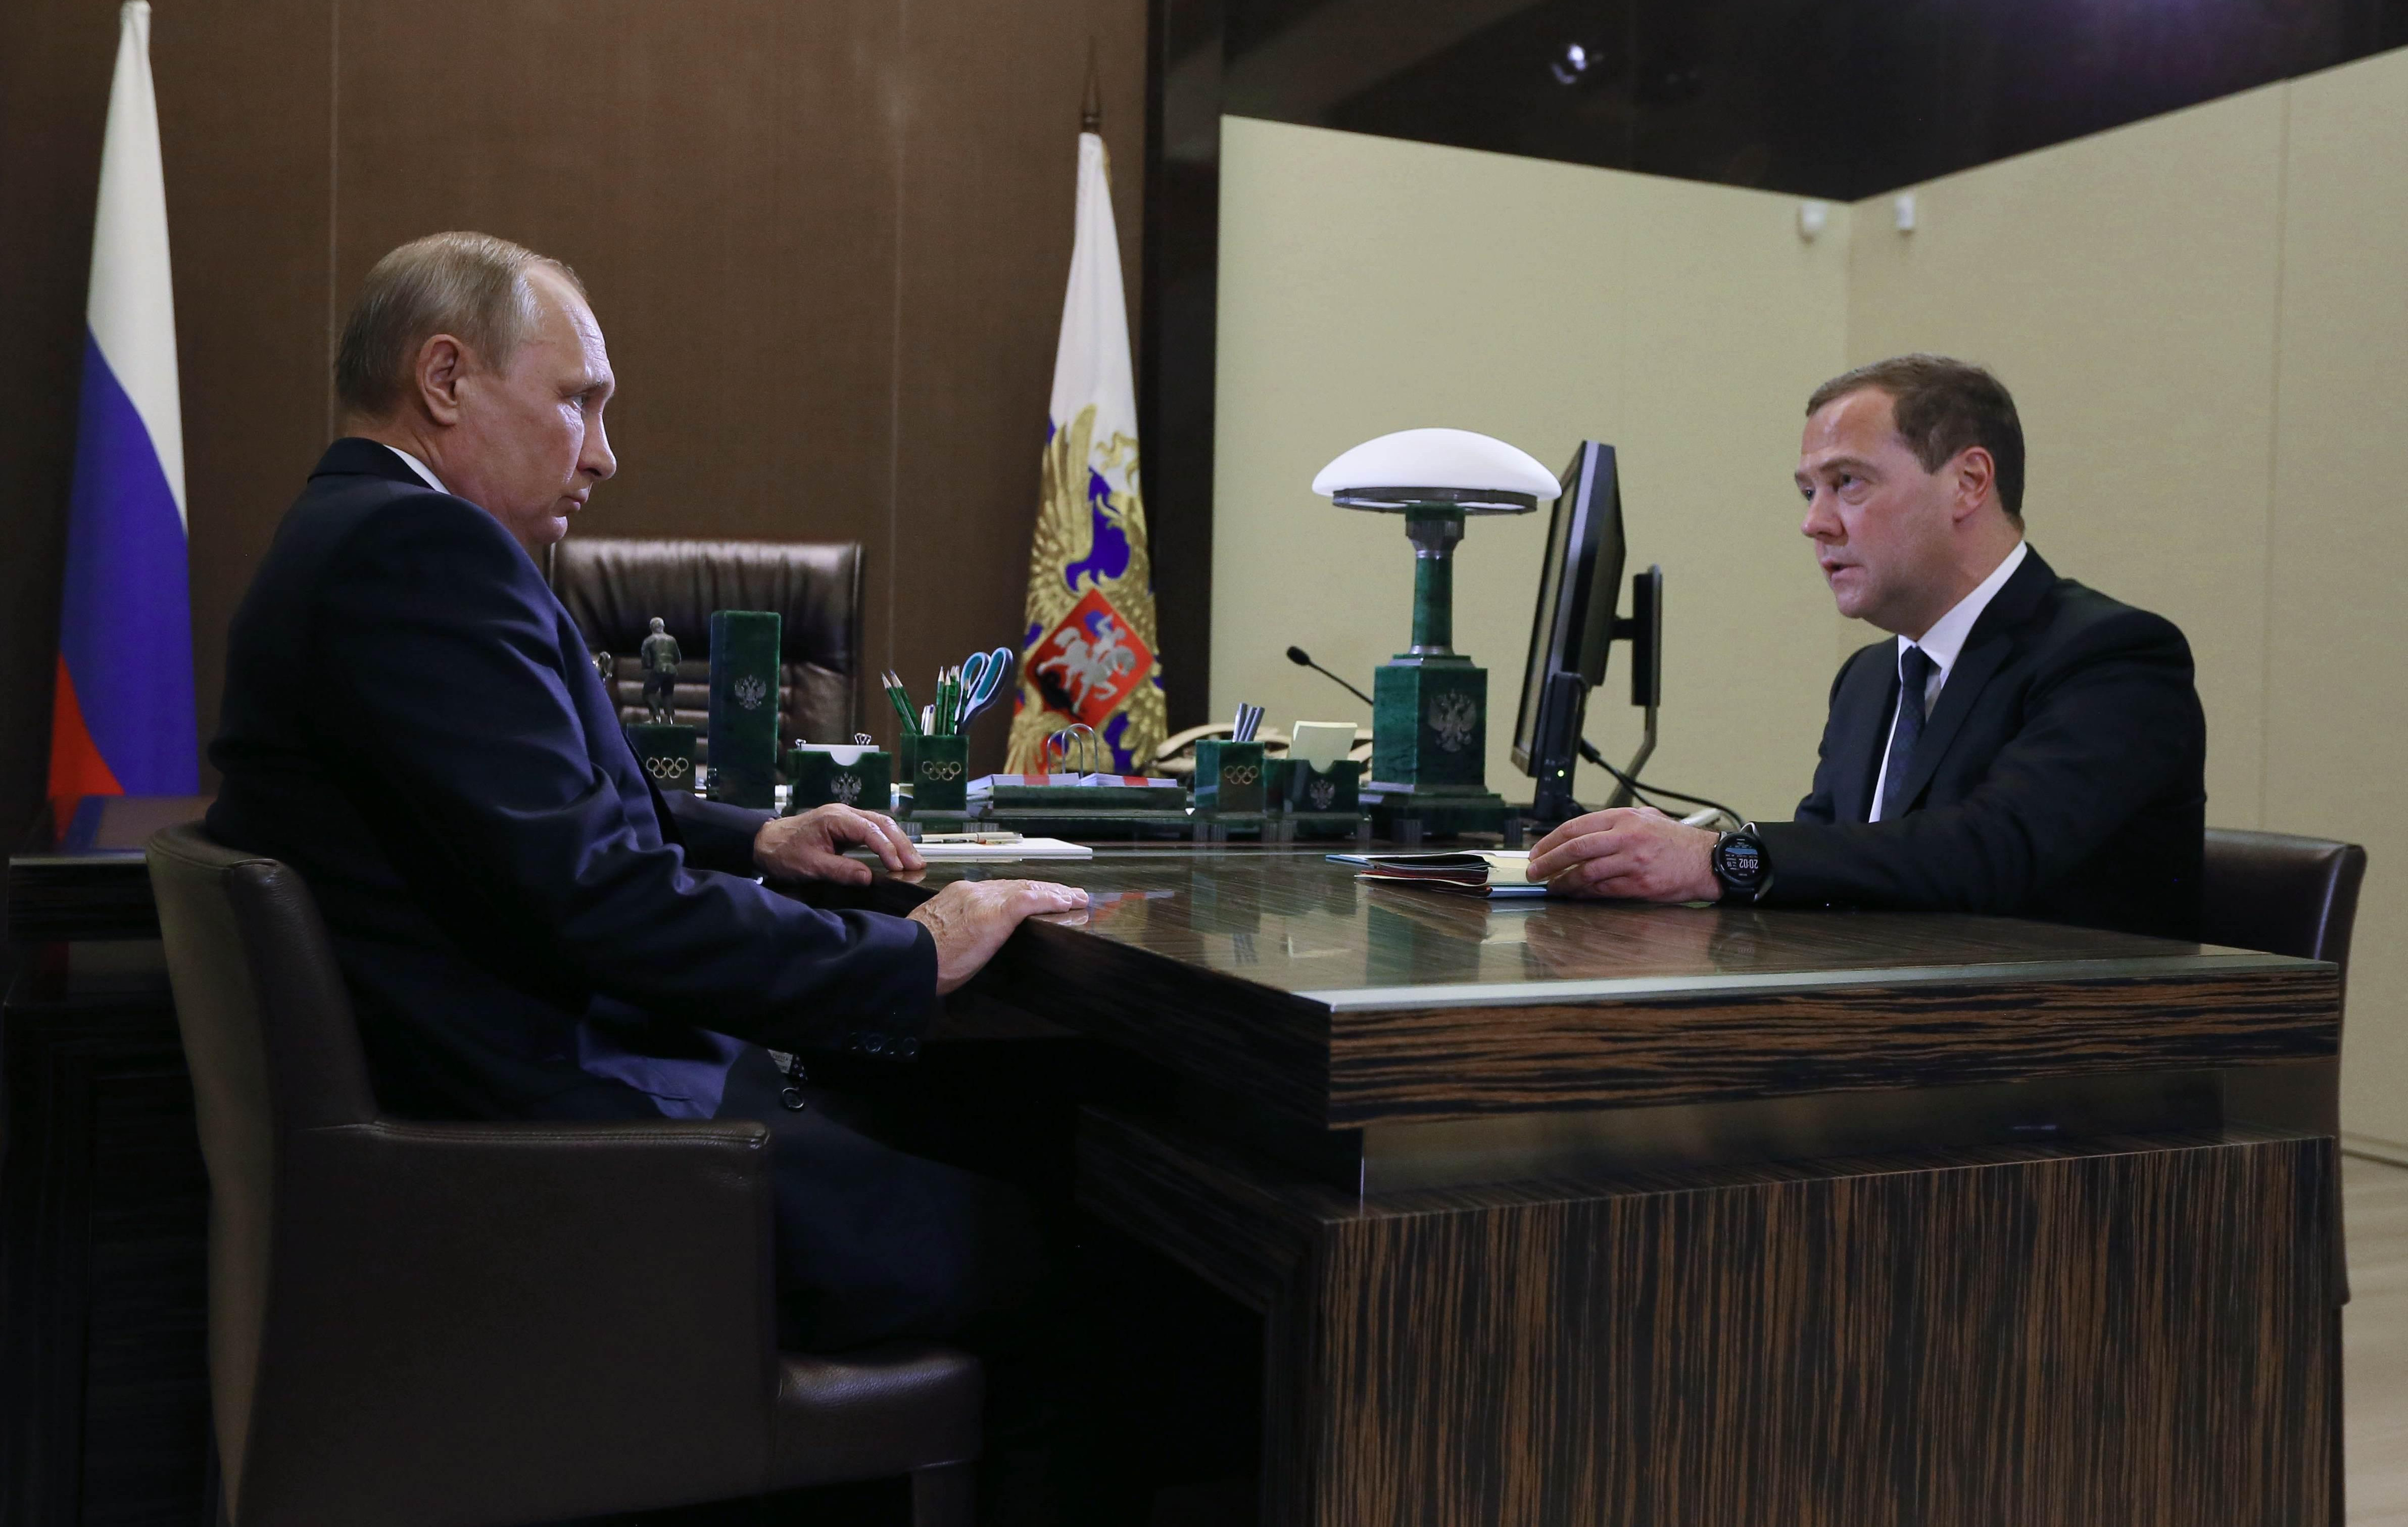 (FOTO) PUTIN UNAPRED OBAVEŠTEN O AKCIJI! Uhapšen bivši ruski ministar i blizak prijatelj Medvedeva - Napustio kabinet, prebacio novac strancima, nadgledao POVERLJIVE TEHNOLOGIJE!